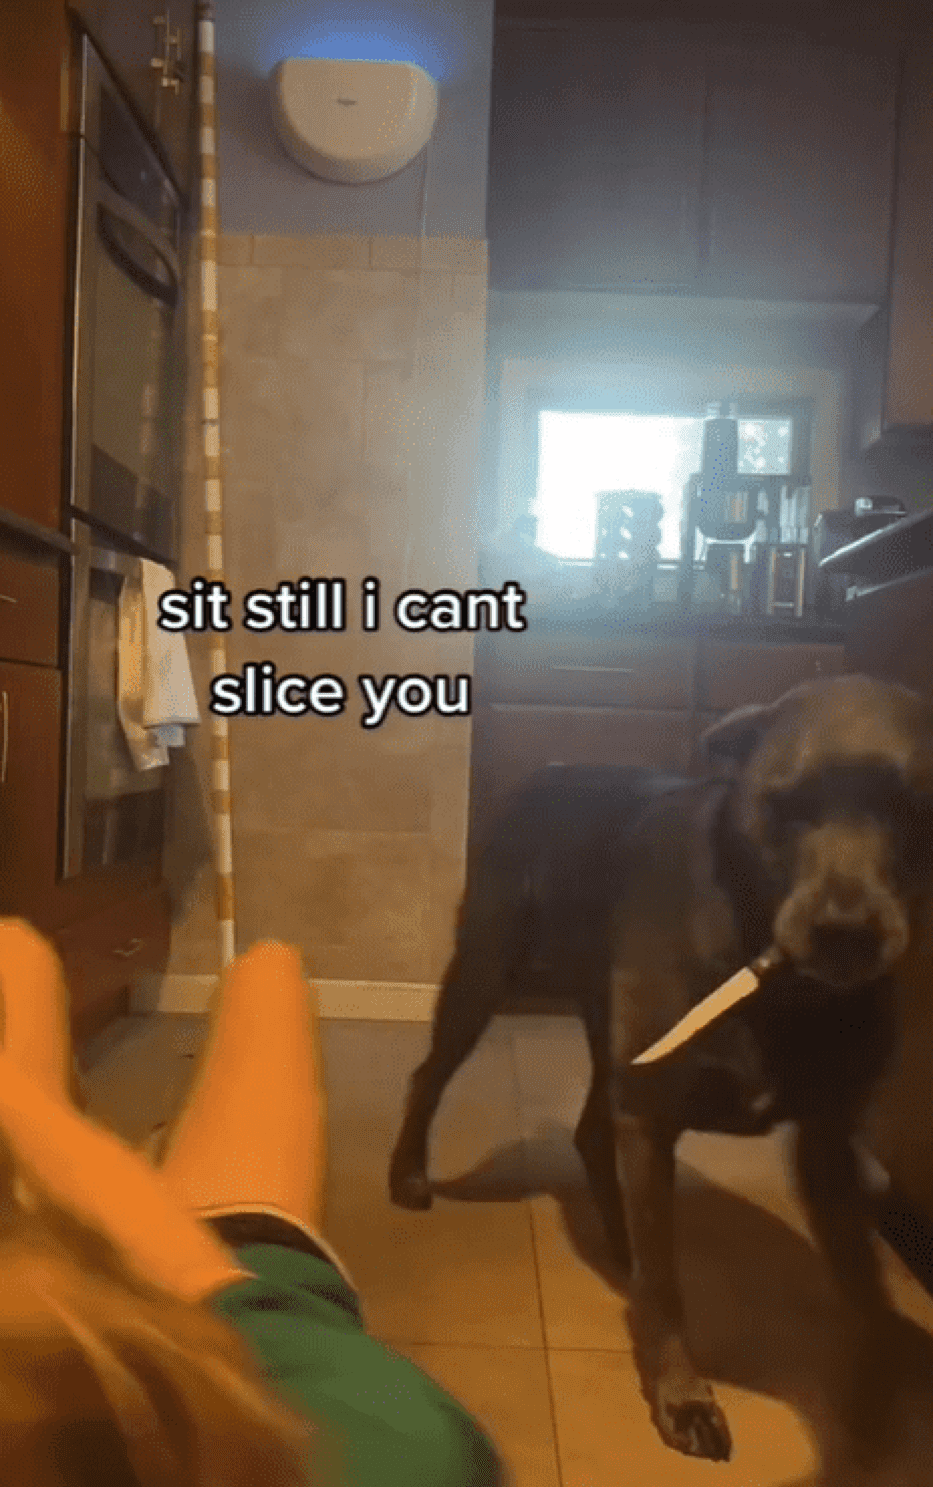 Ein Hund mit Messer sitzt neben dem Frauchen, die auf dem Boden liegt. Dazu der lustige Kommentar  “halt still, damit ich dich abstechen kann.” | Quelle: Tiktok.com/@thedeeckendogs